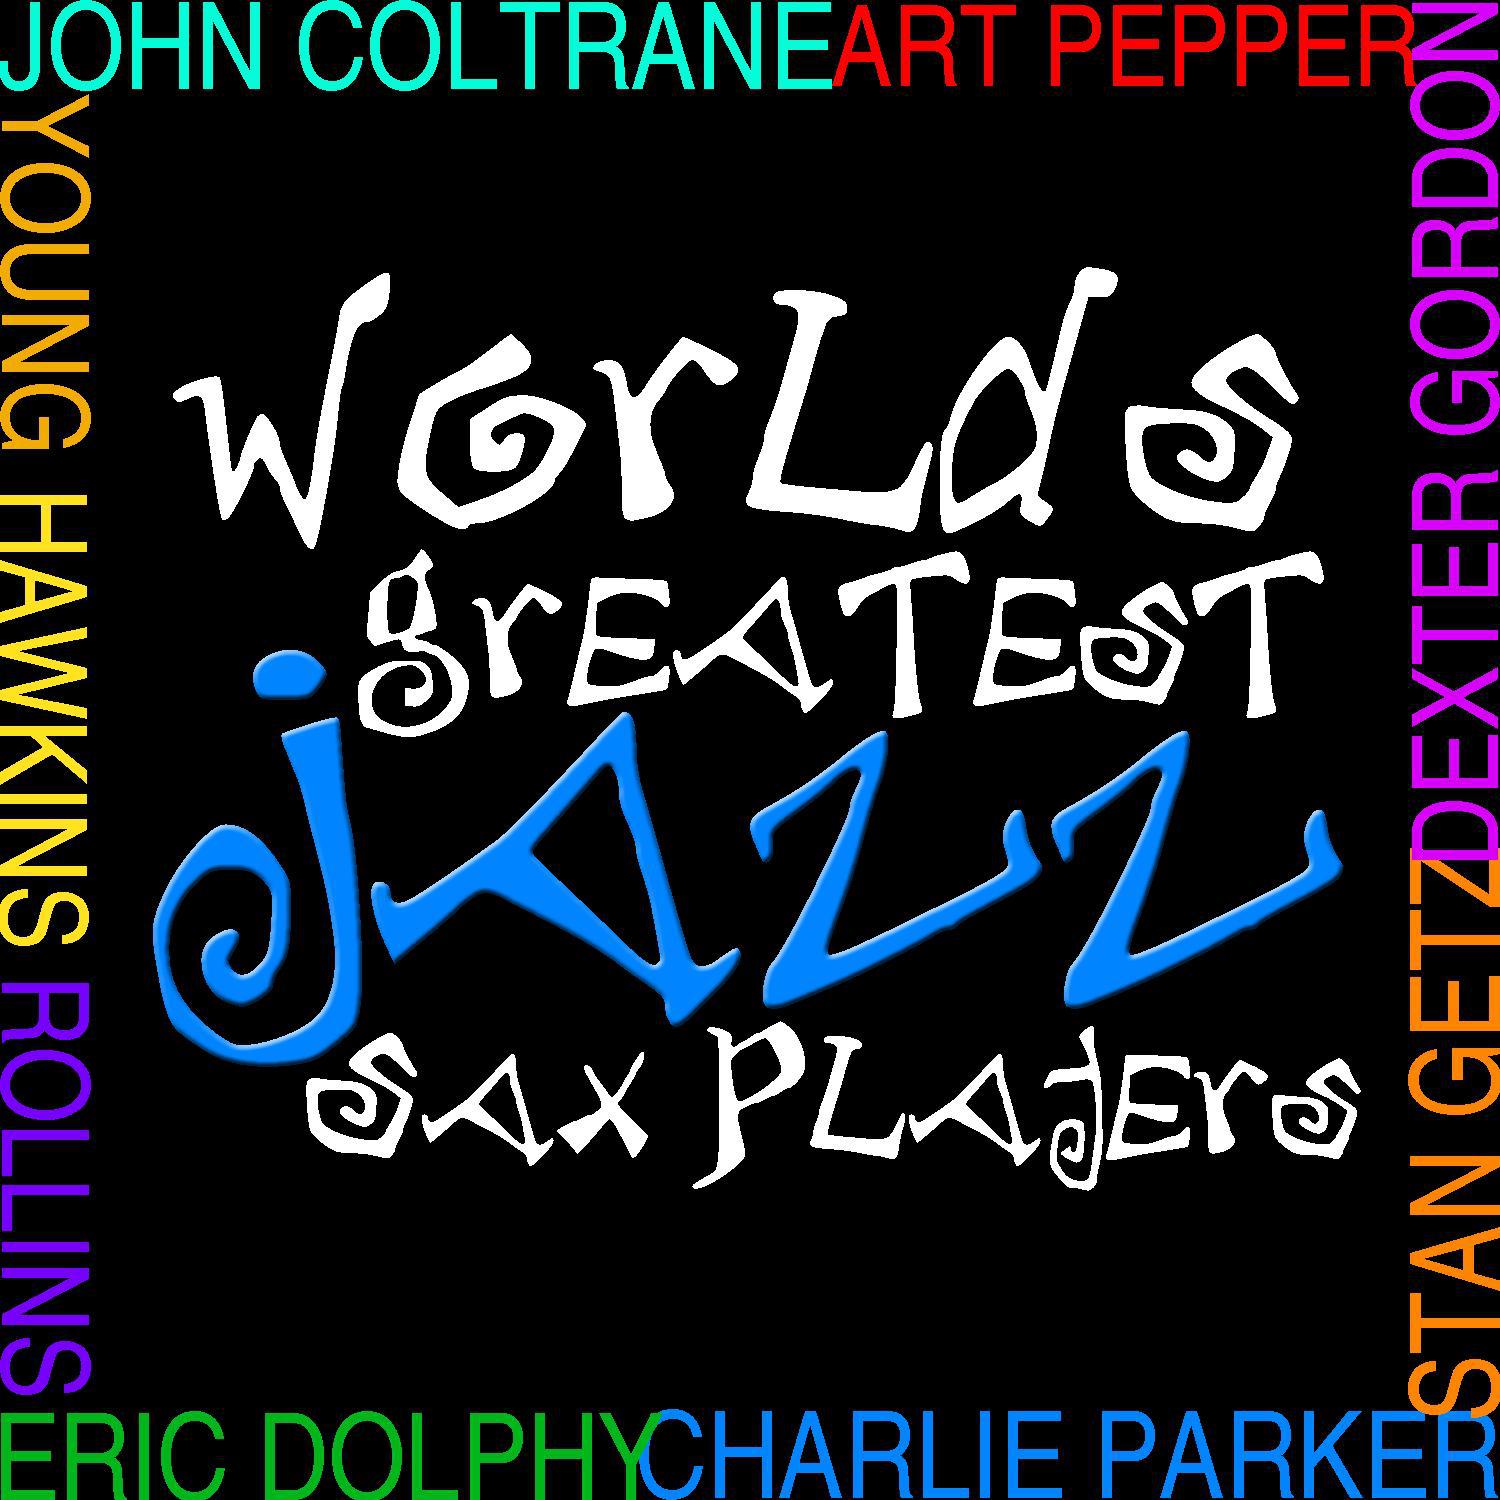 Worlds Greatest Jazz Sax Players